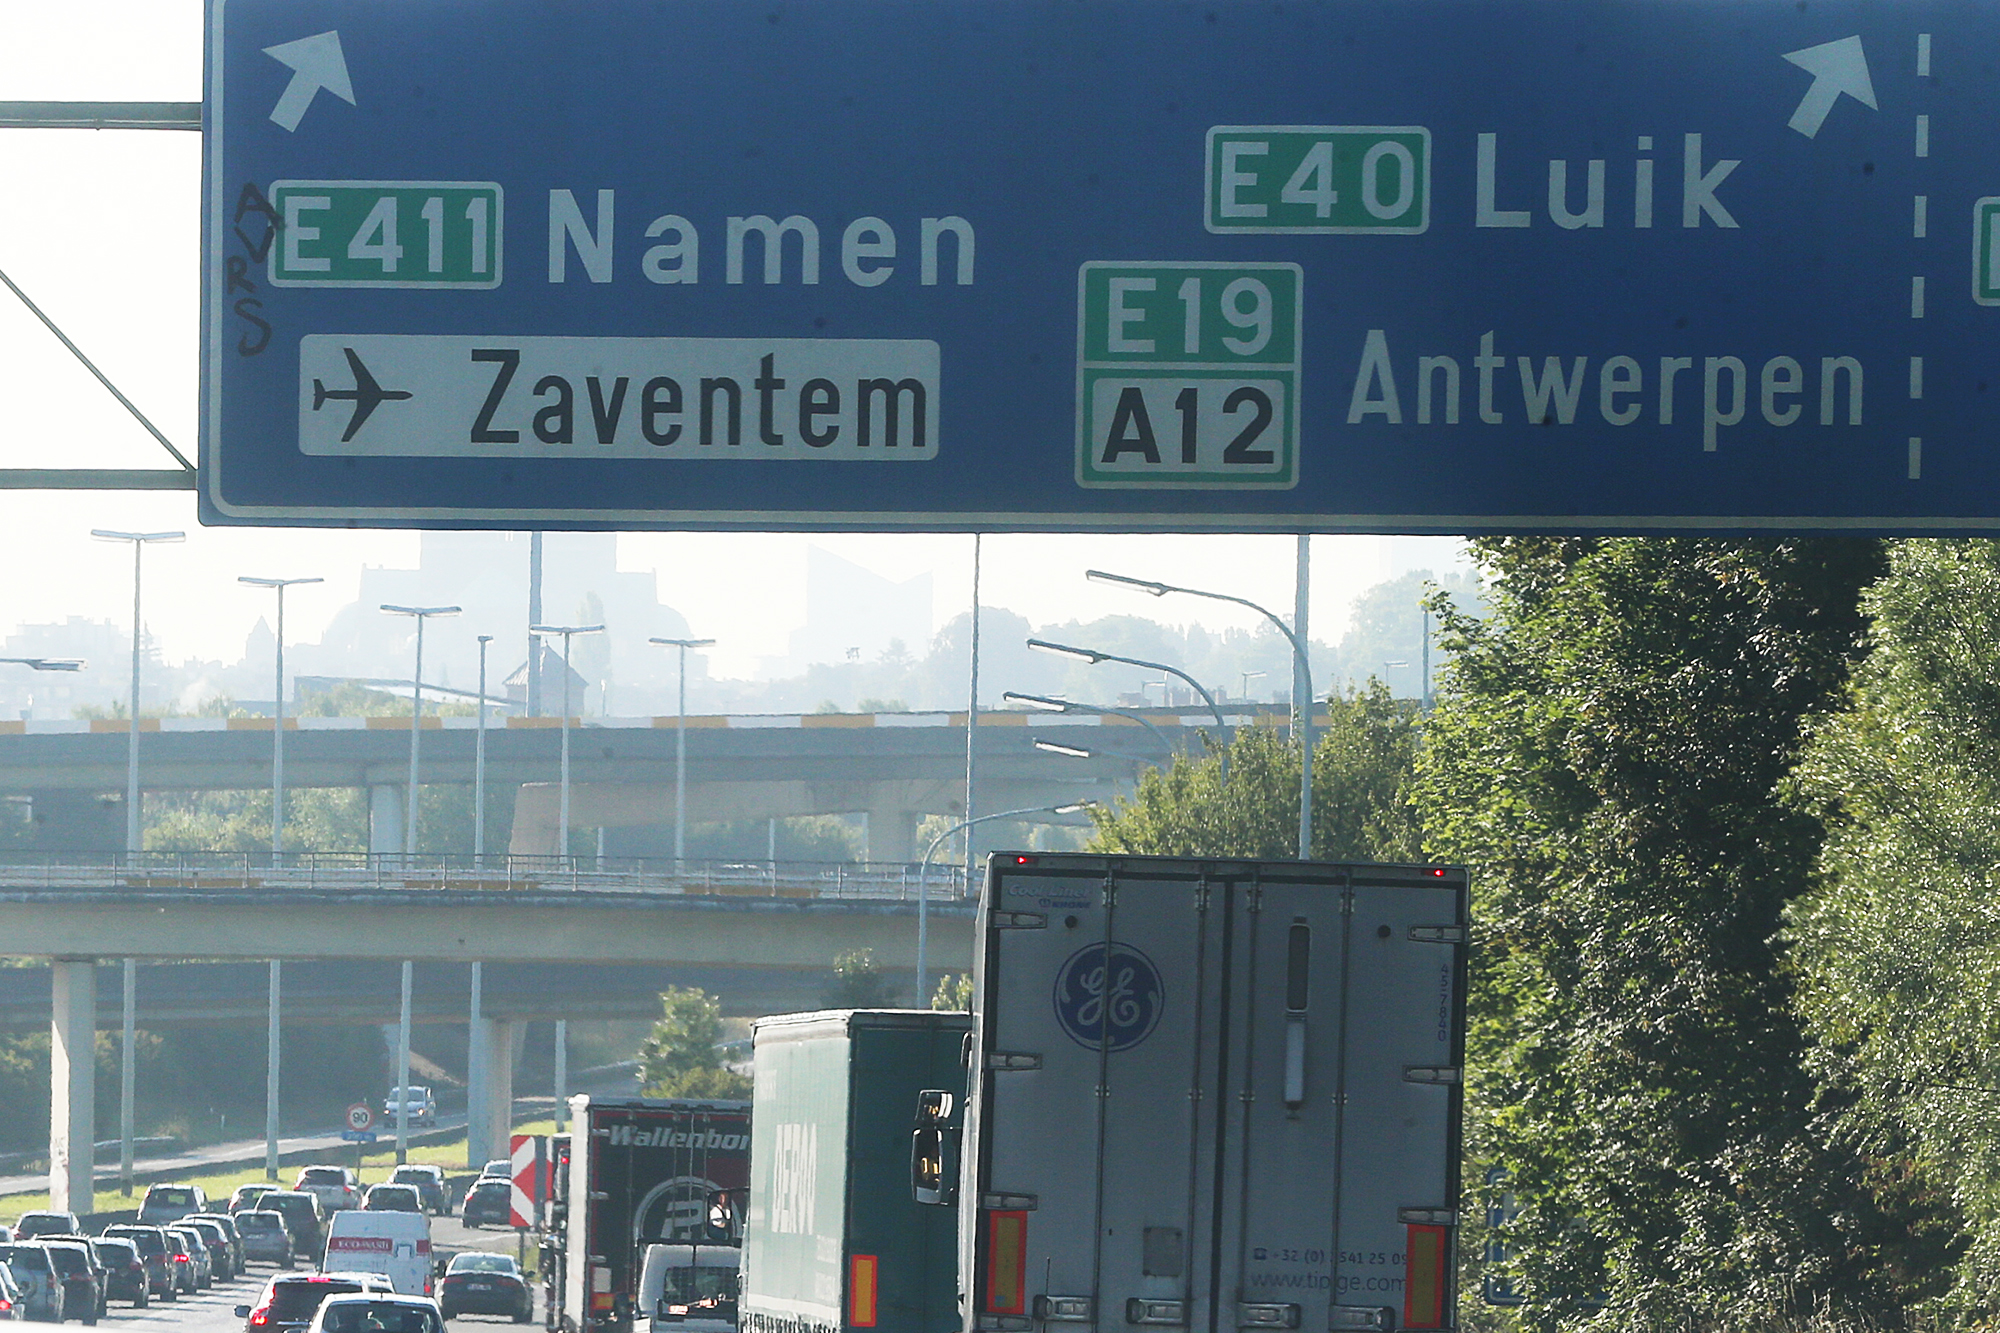 "Namen" und "Luik": Bald in Flandern nicht mehr auf Autobahnschildern zu lesen (Illustrationsbild: Nicolas Maeterlinck/Belga)